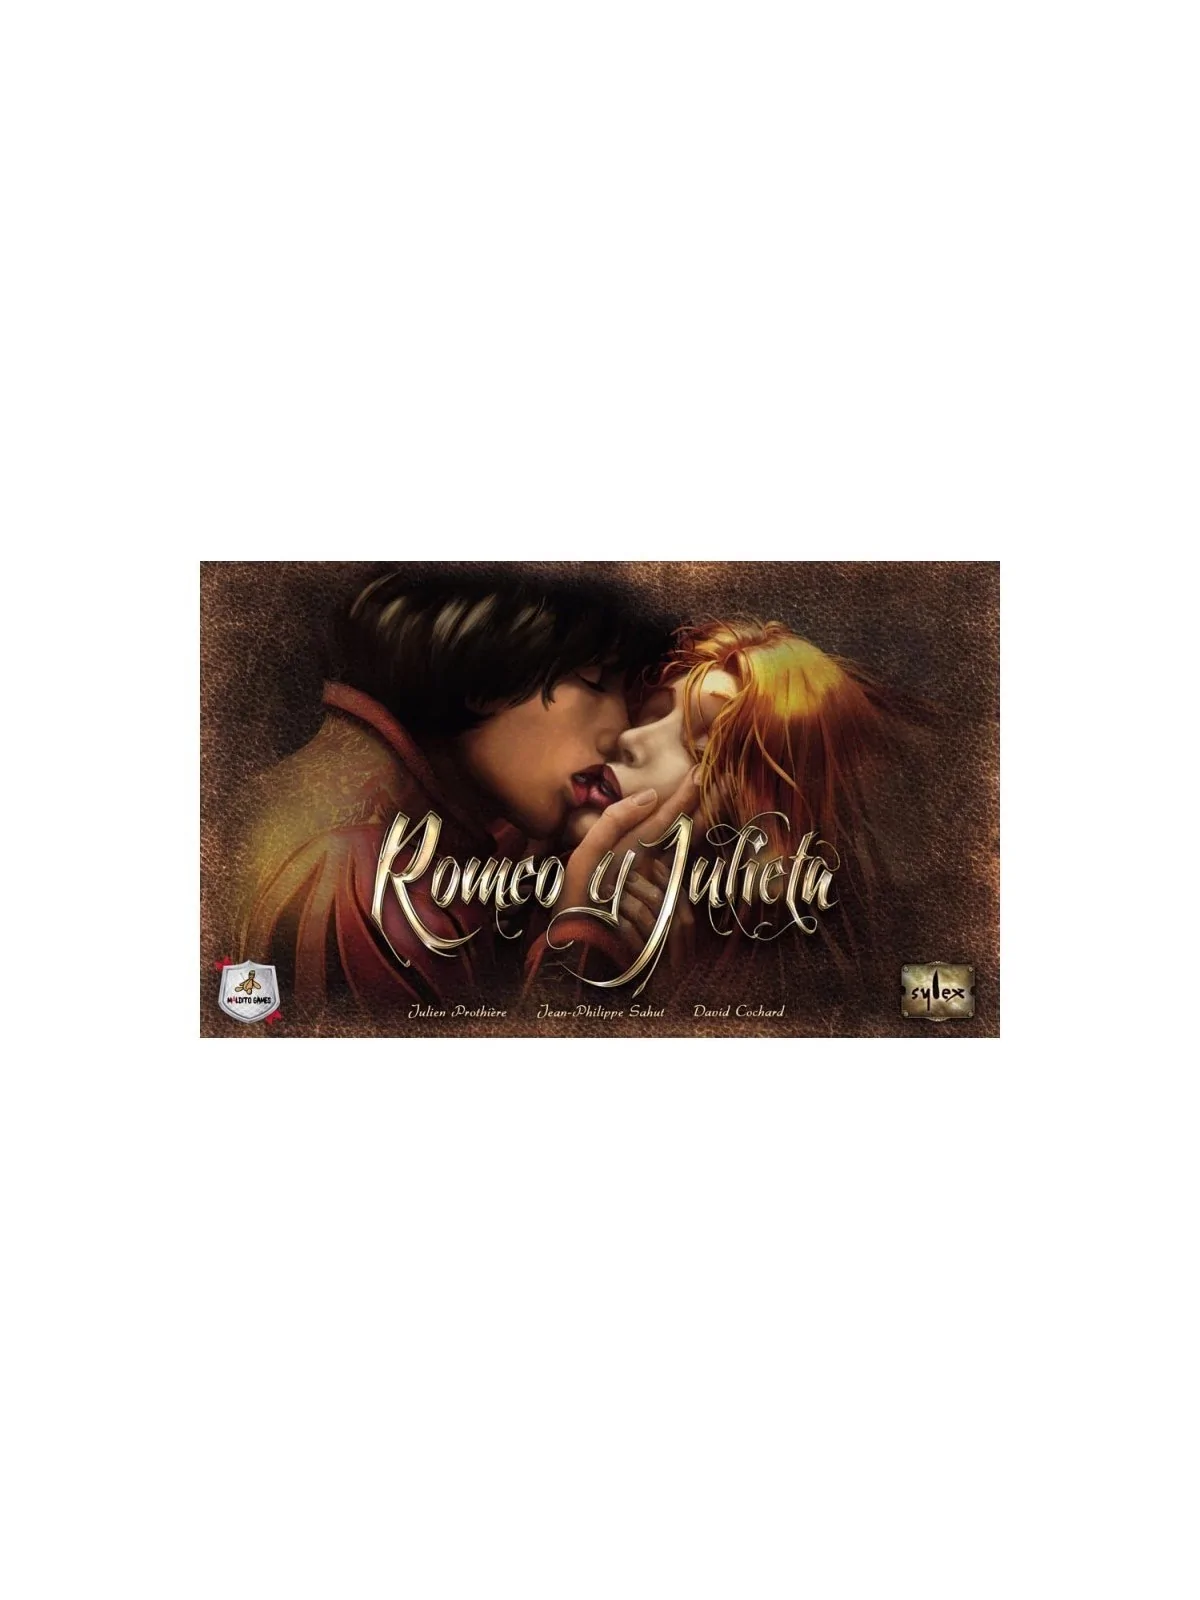 Comprar Romeo y Julieta barato al mejor precio 7,00 € de Maldito Games